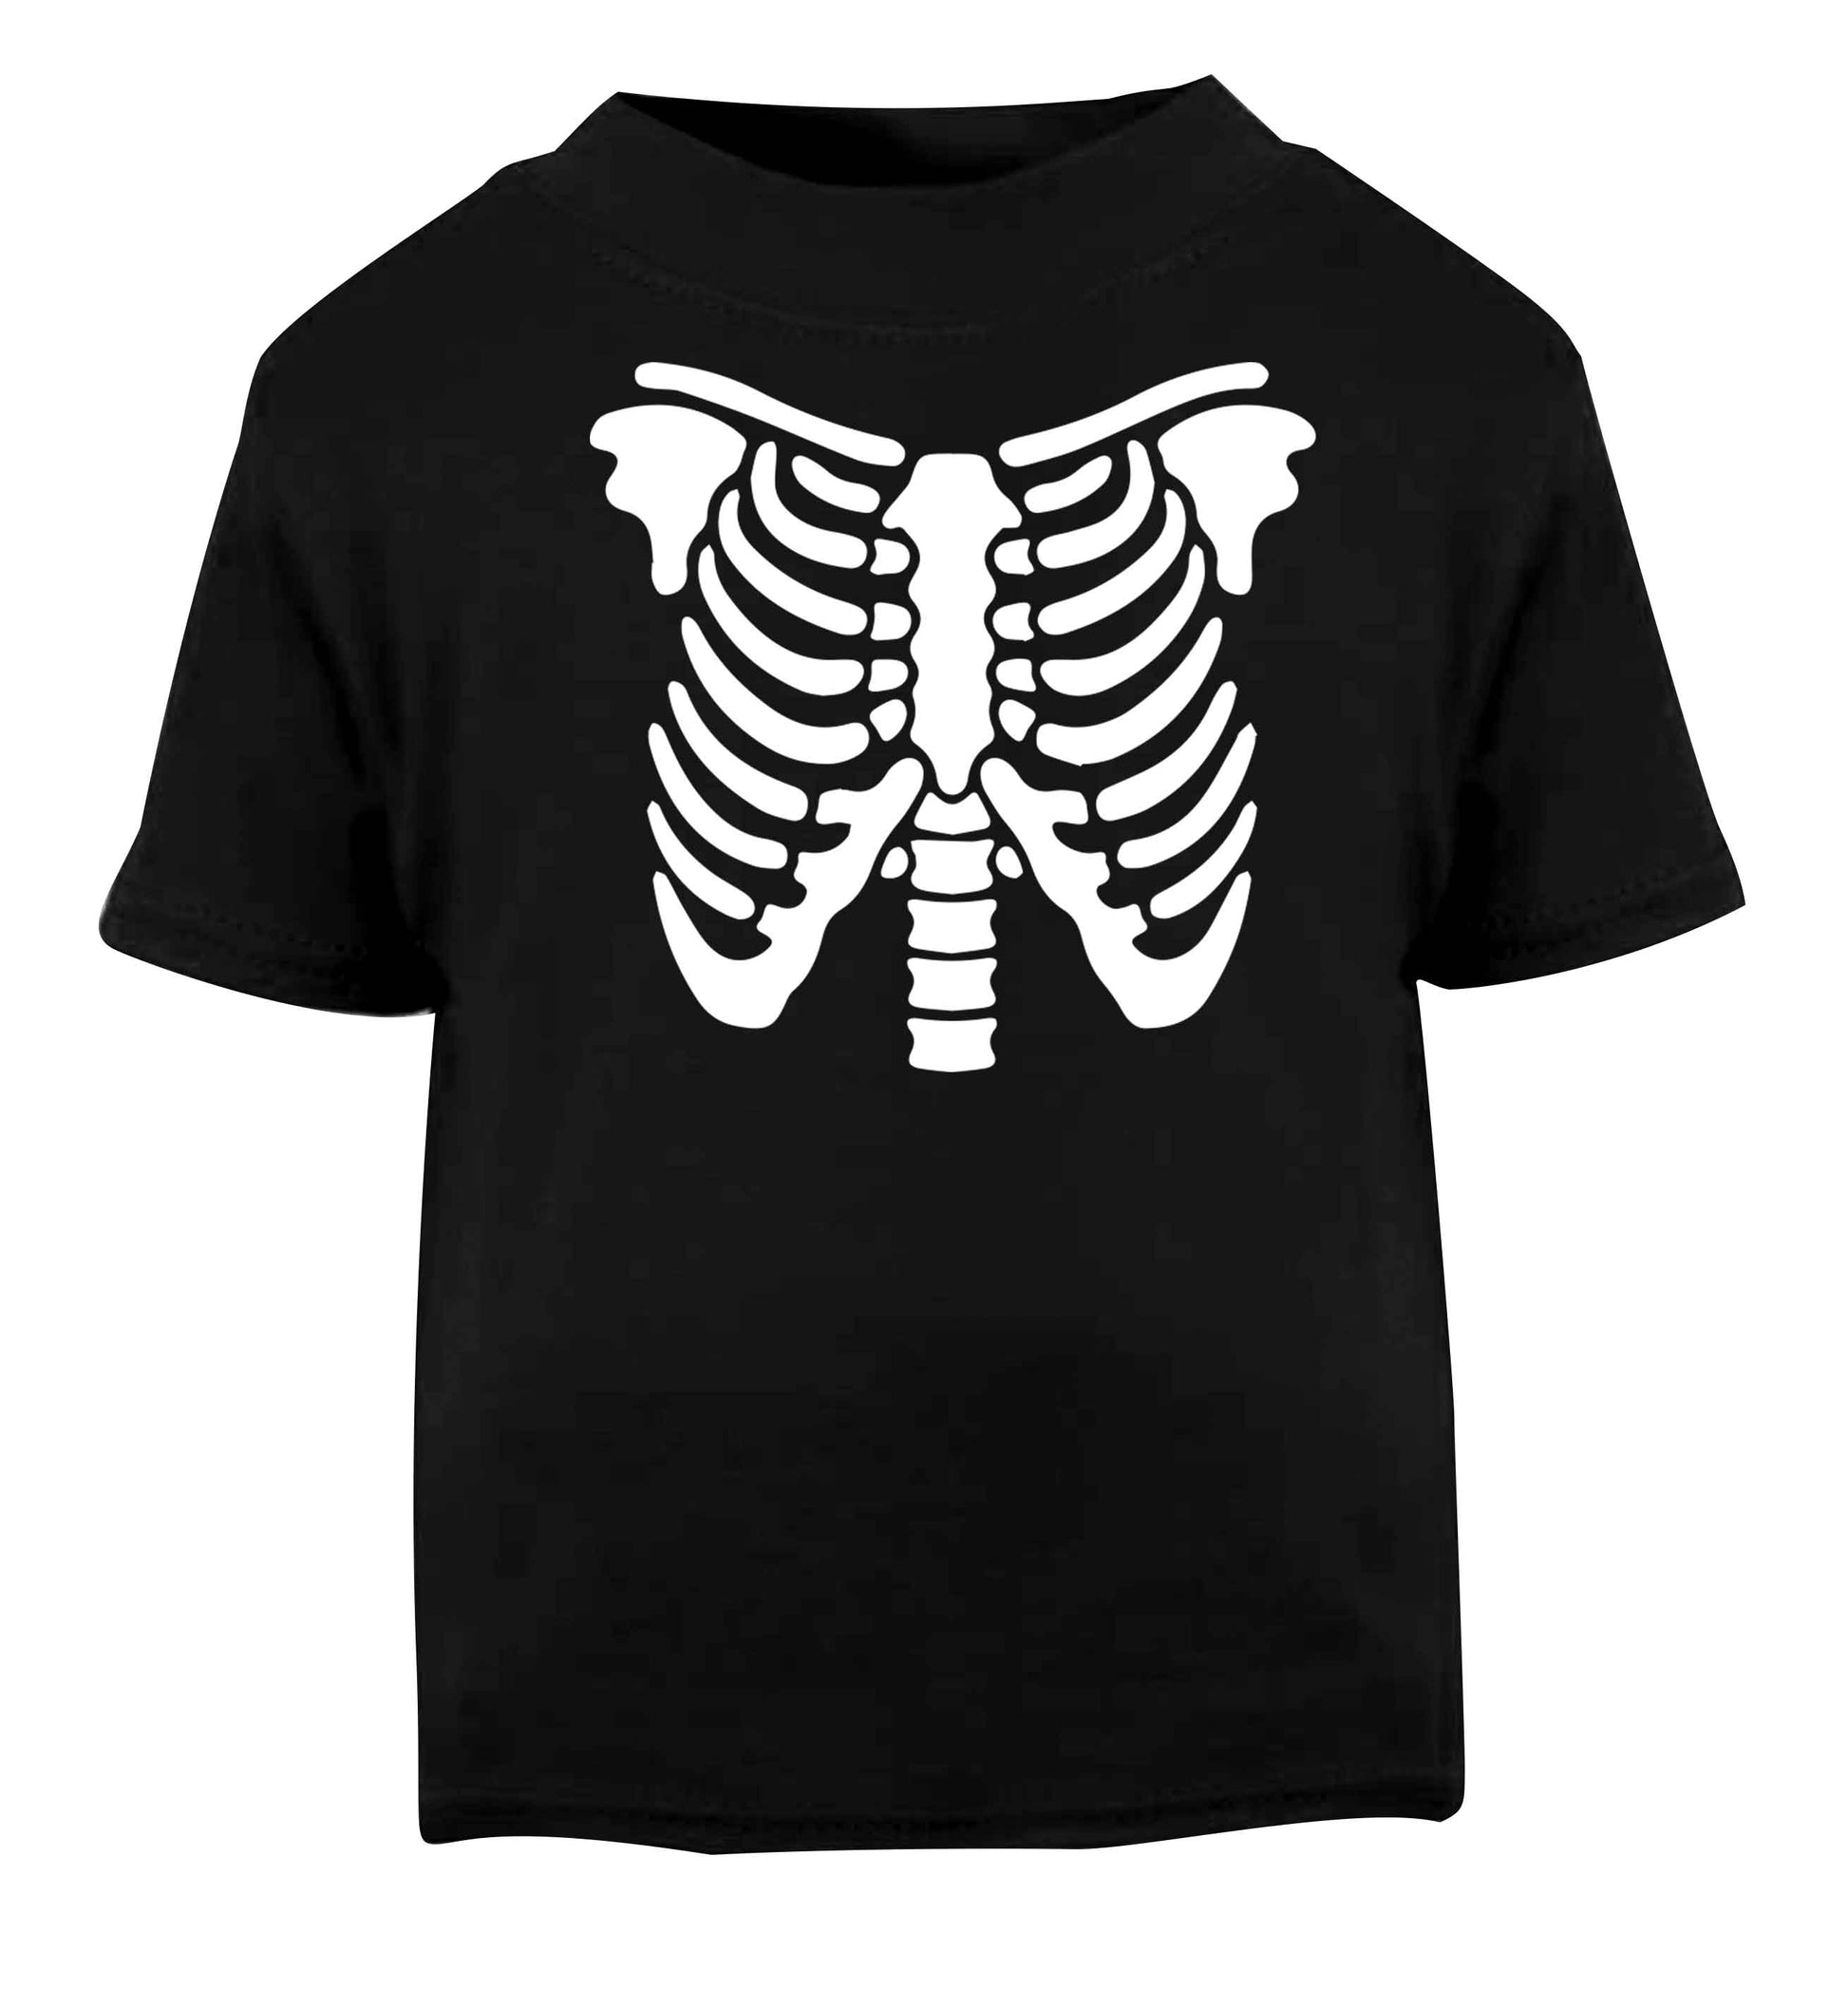 Skeleton ribcage Black baby toddler Tshirt 2 years